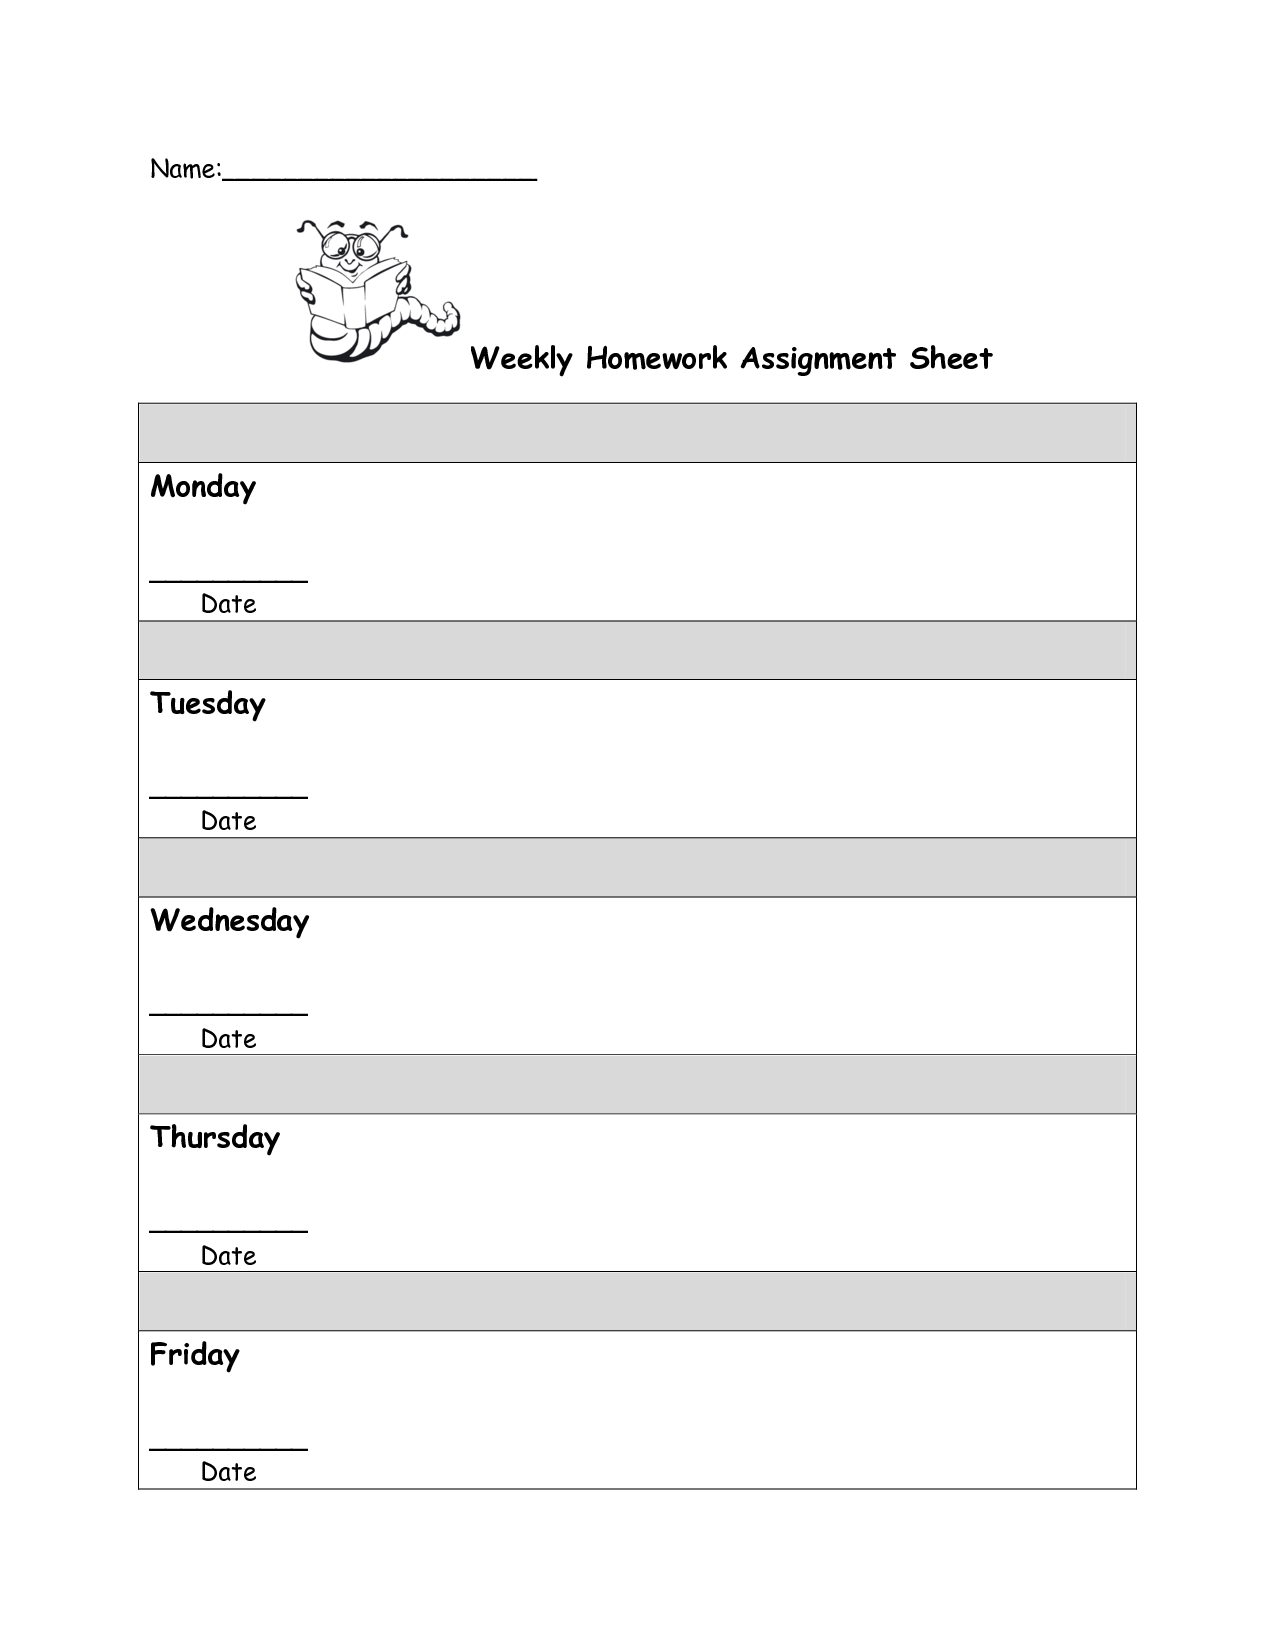 homework assignment sheet template